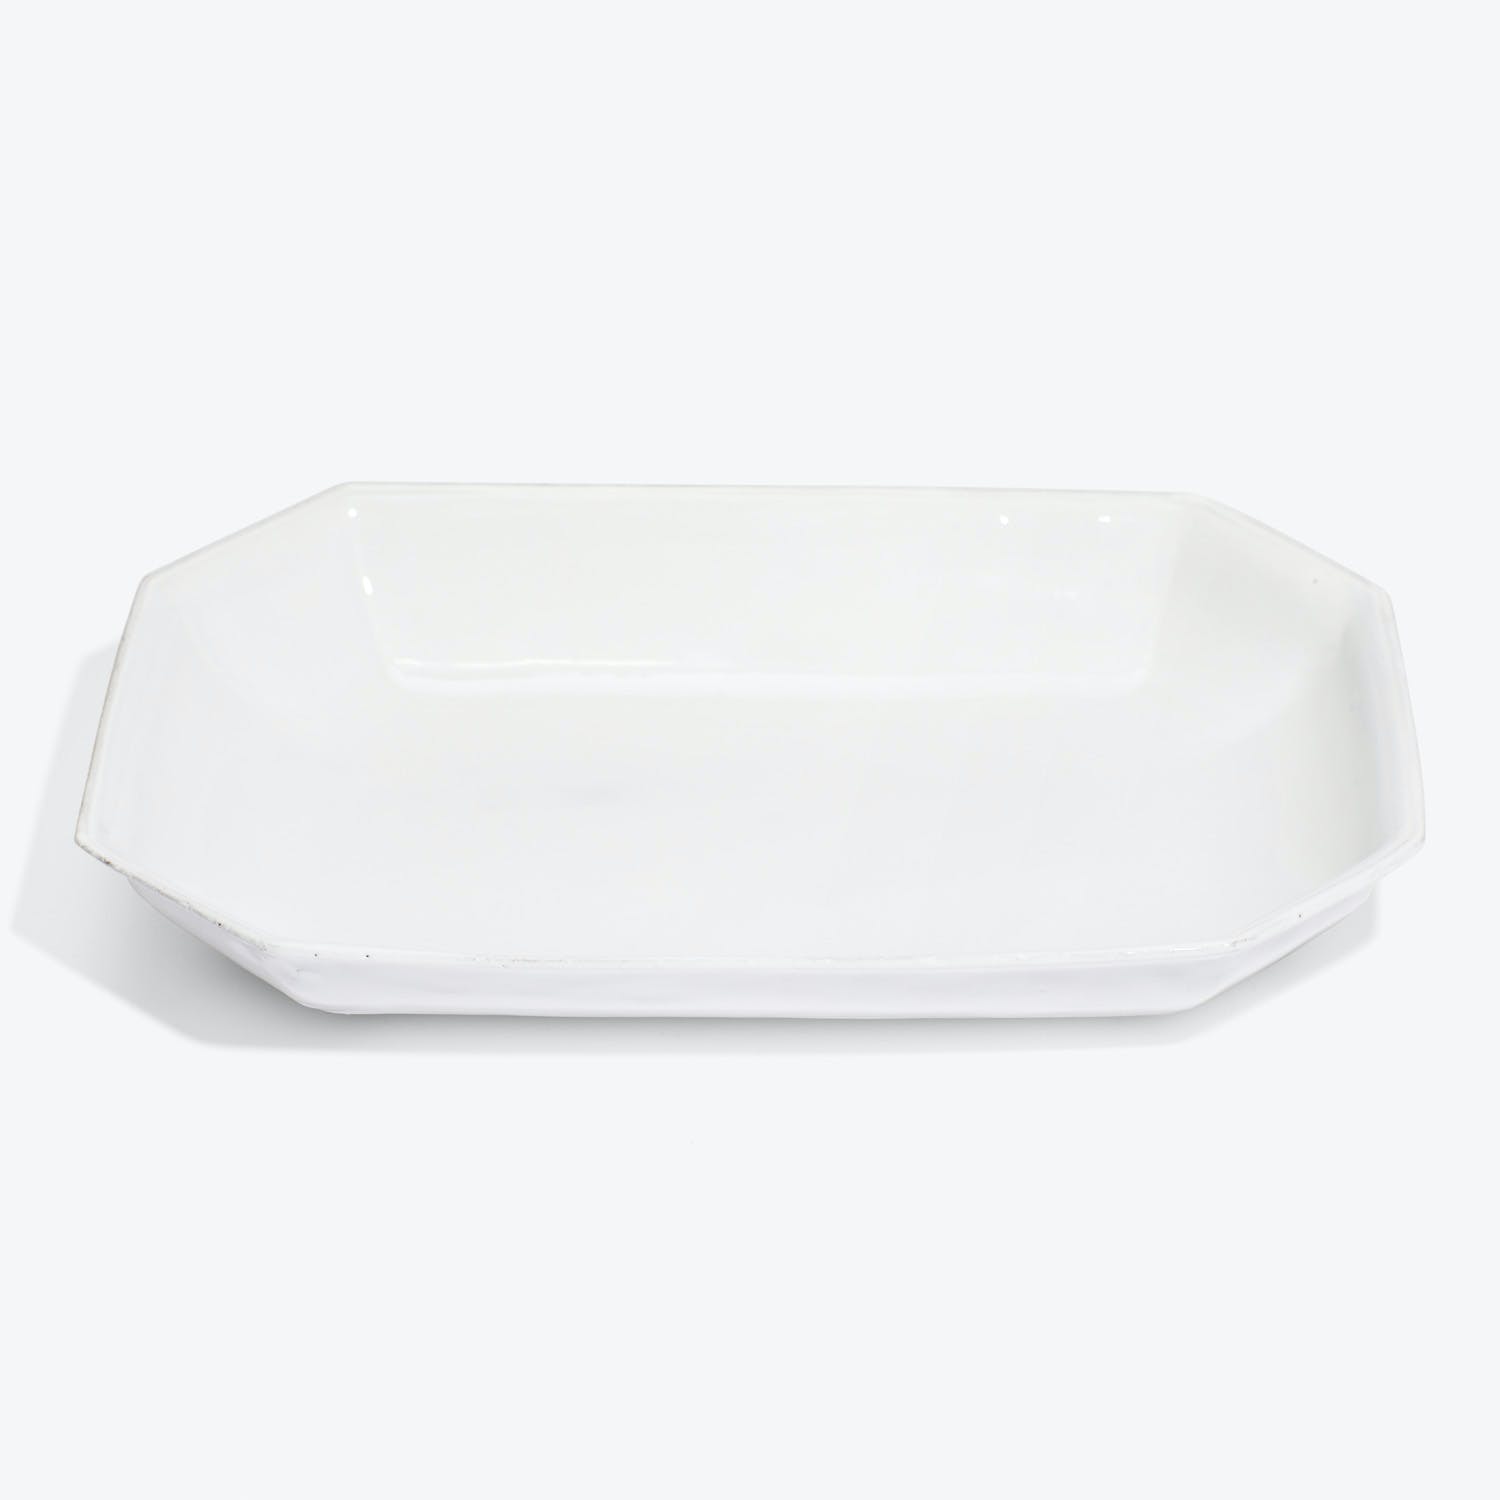 An elegant white octagonal platter with raised edges for serving.